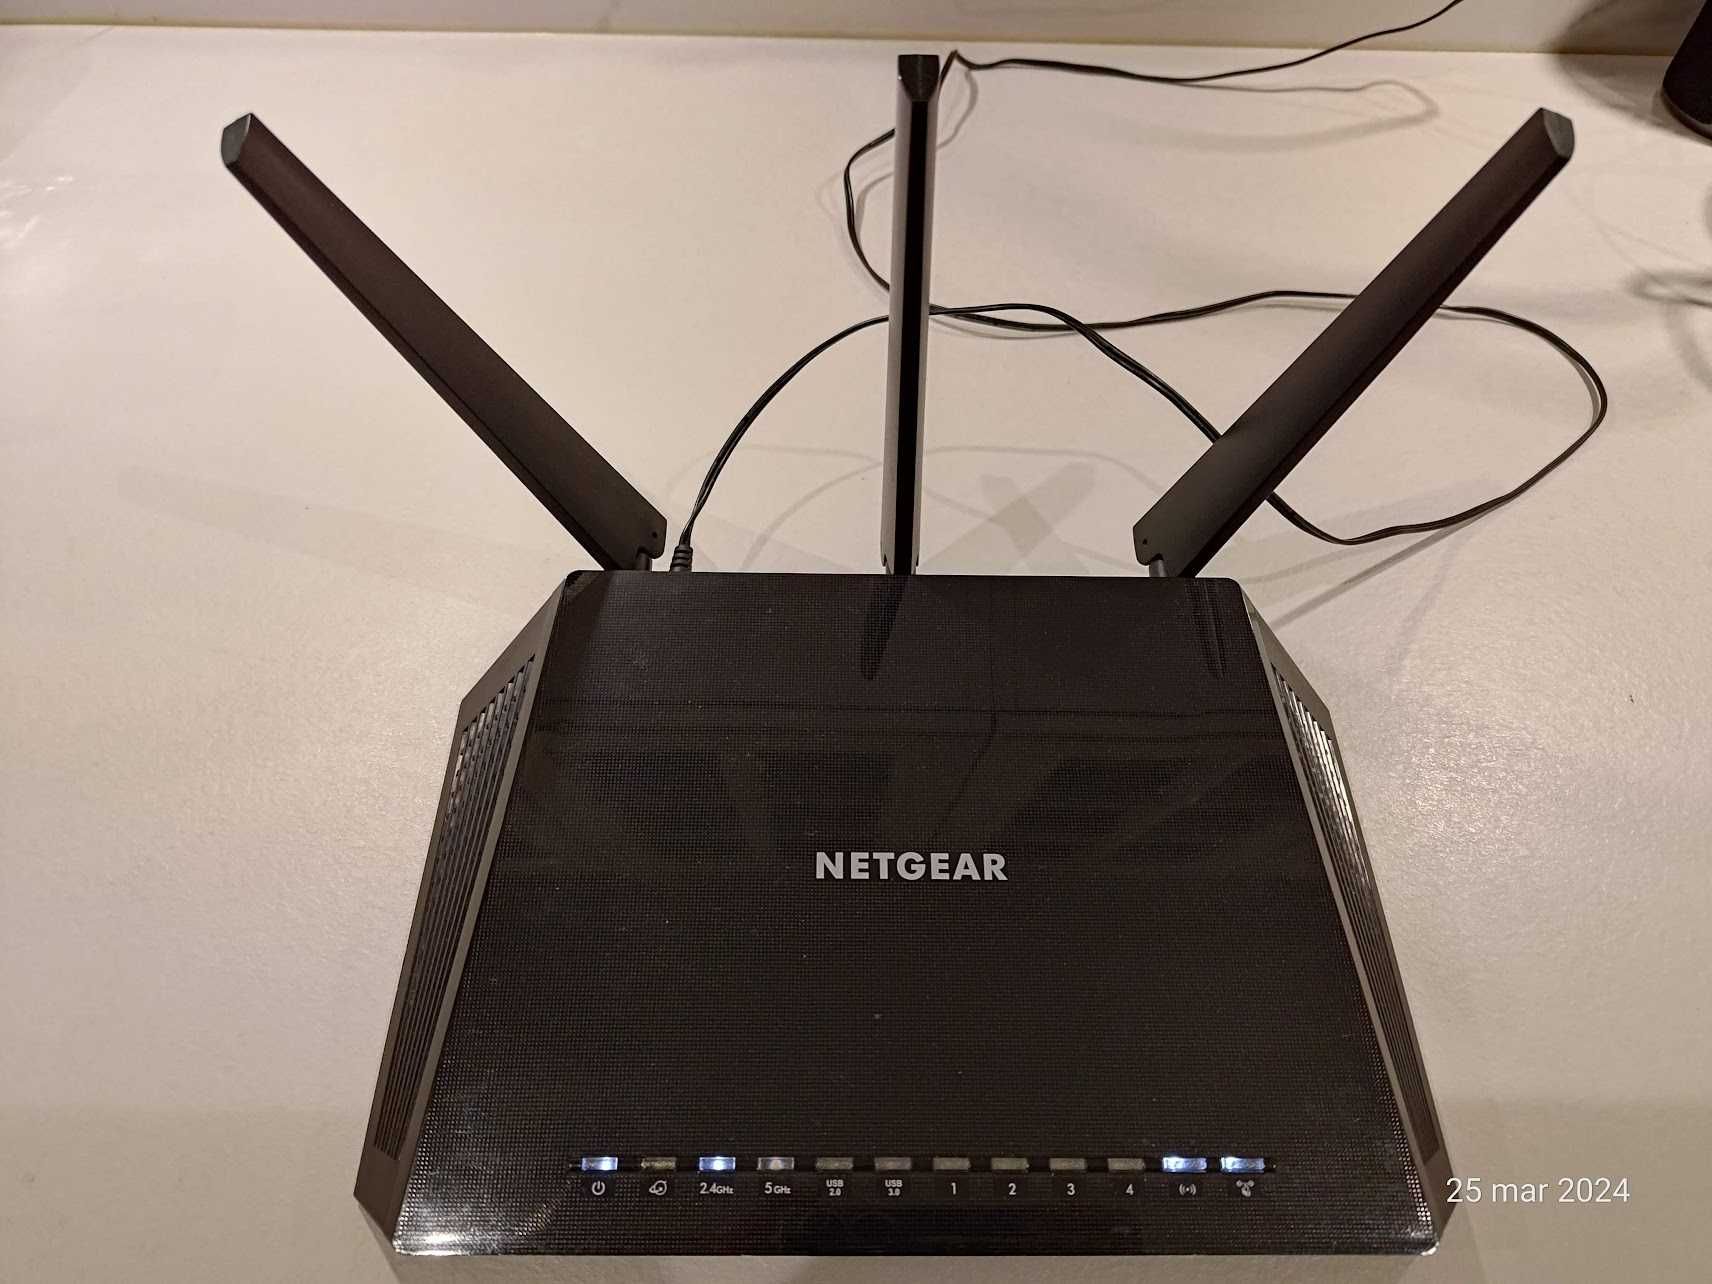 Router Netgear R6800 — AC1900 Dual Band Gigabit